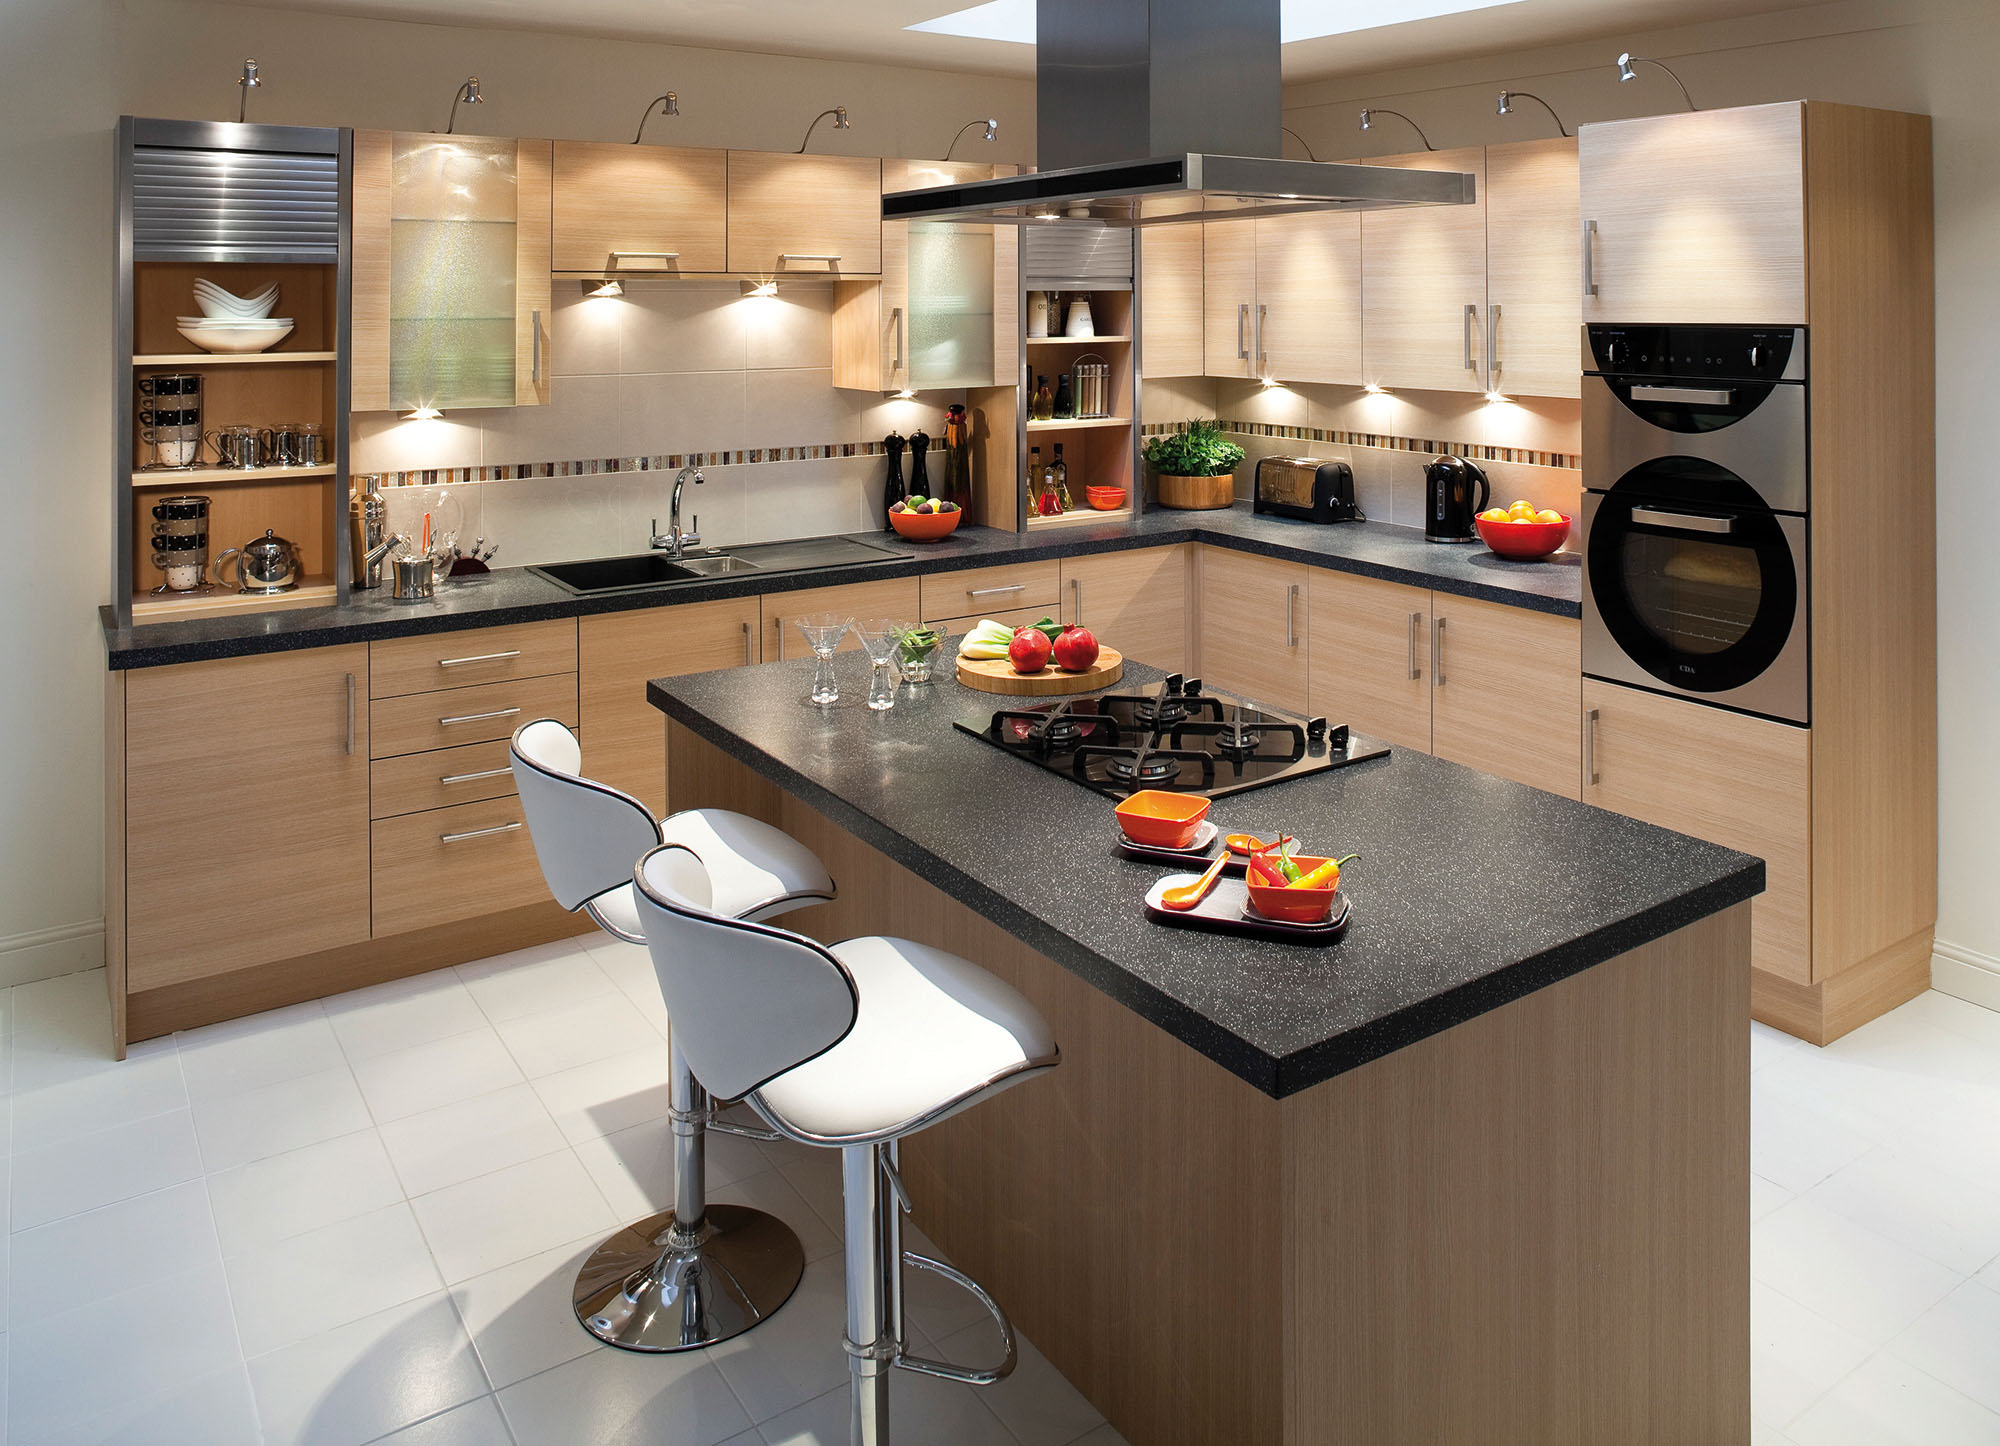 10 G shaped kitchen layout Ideas